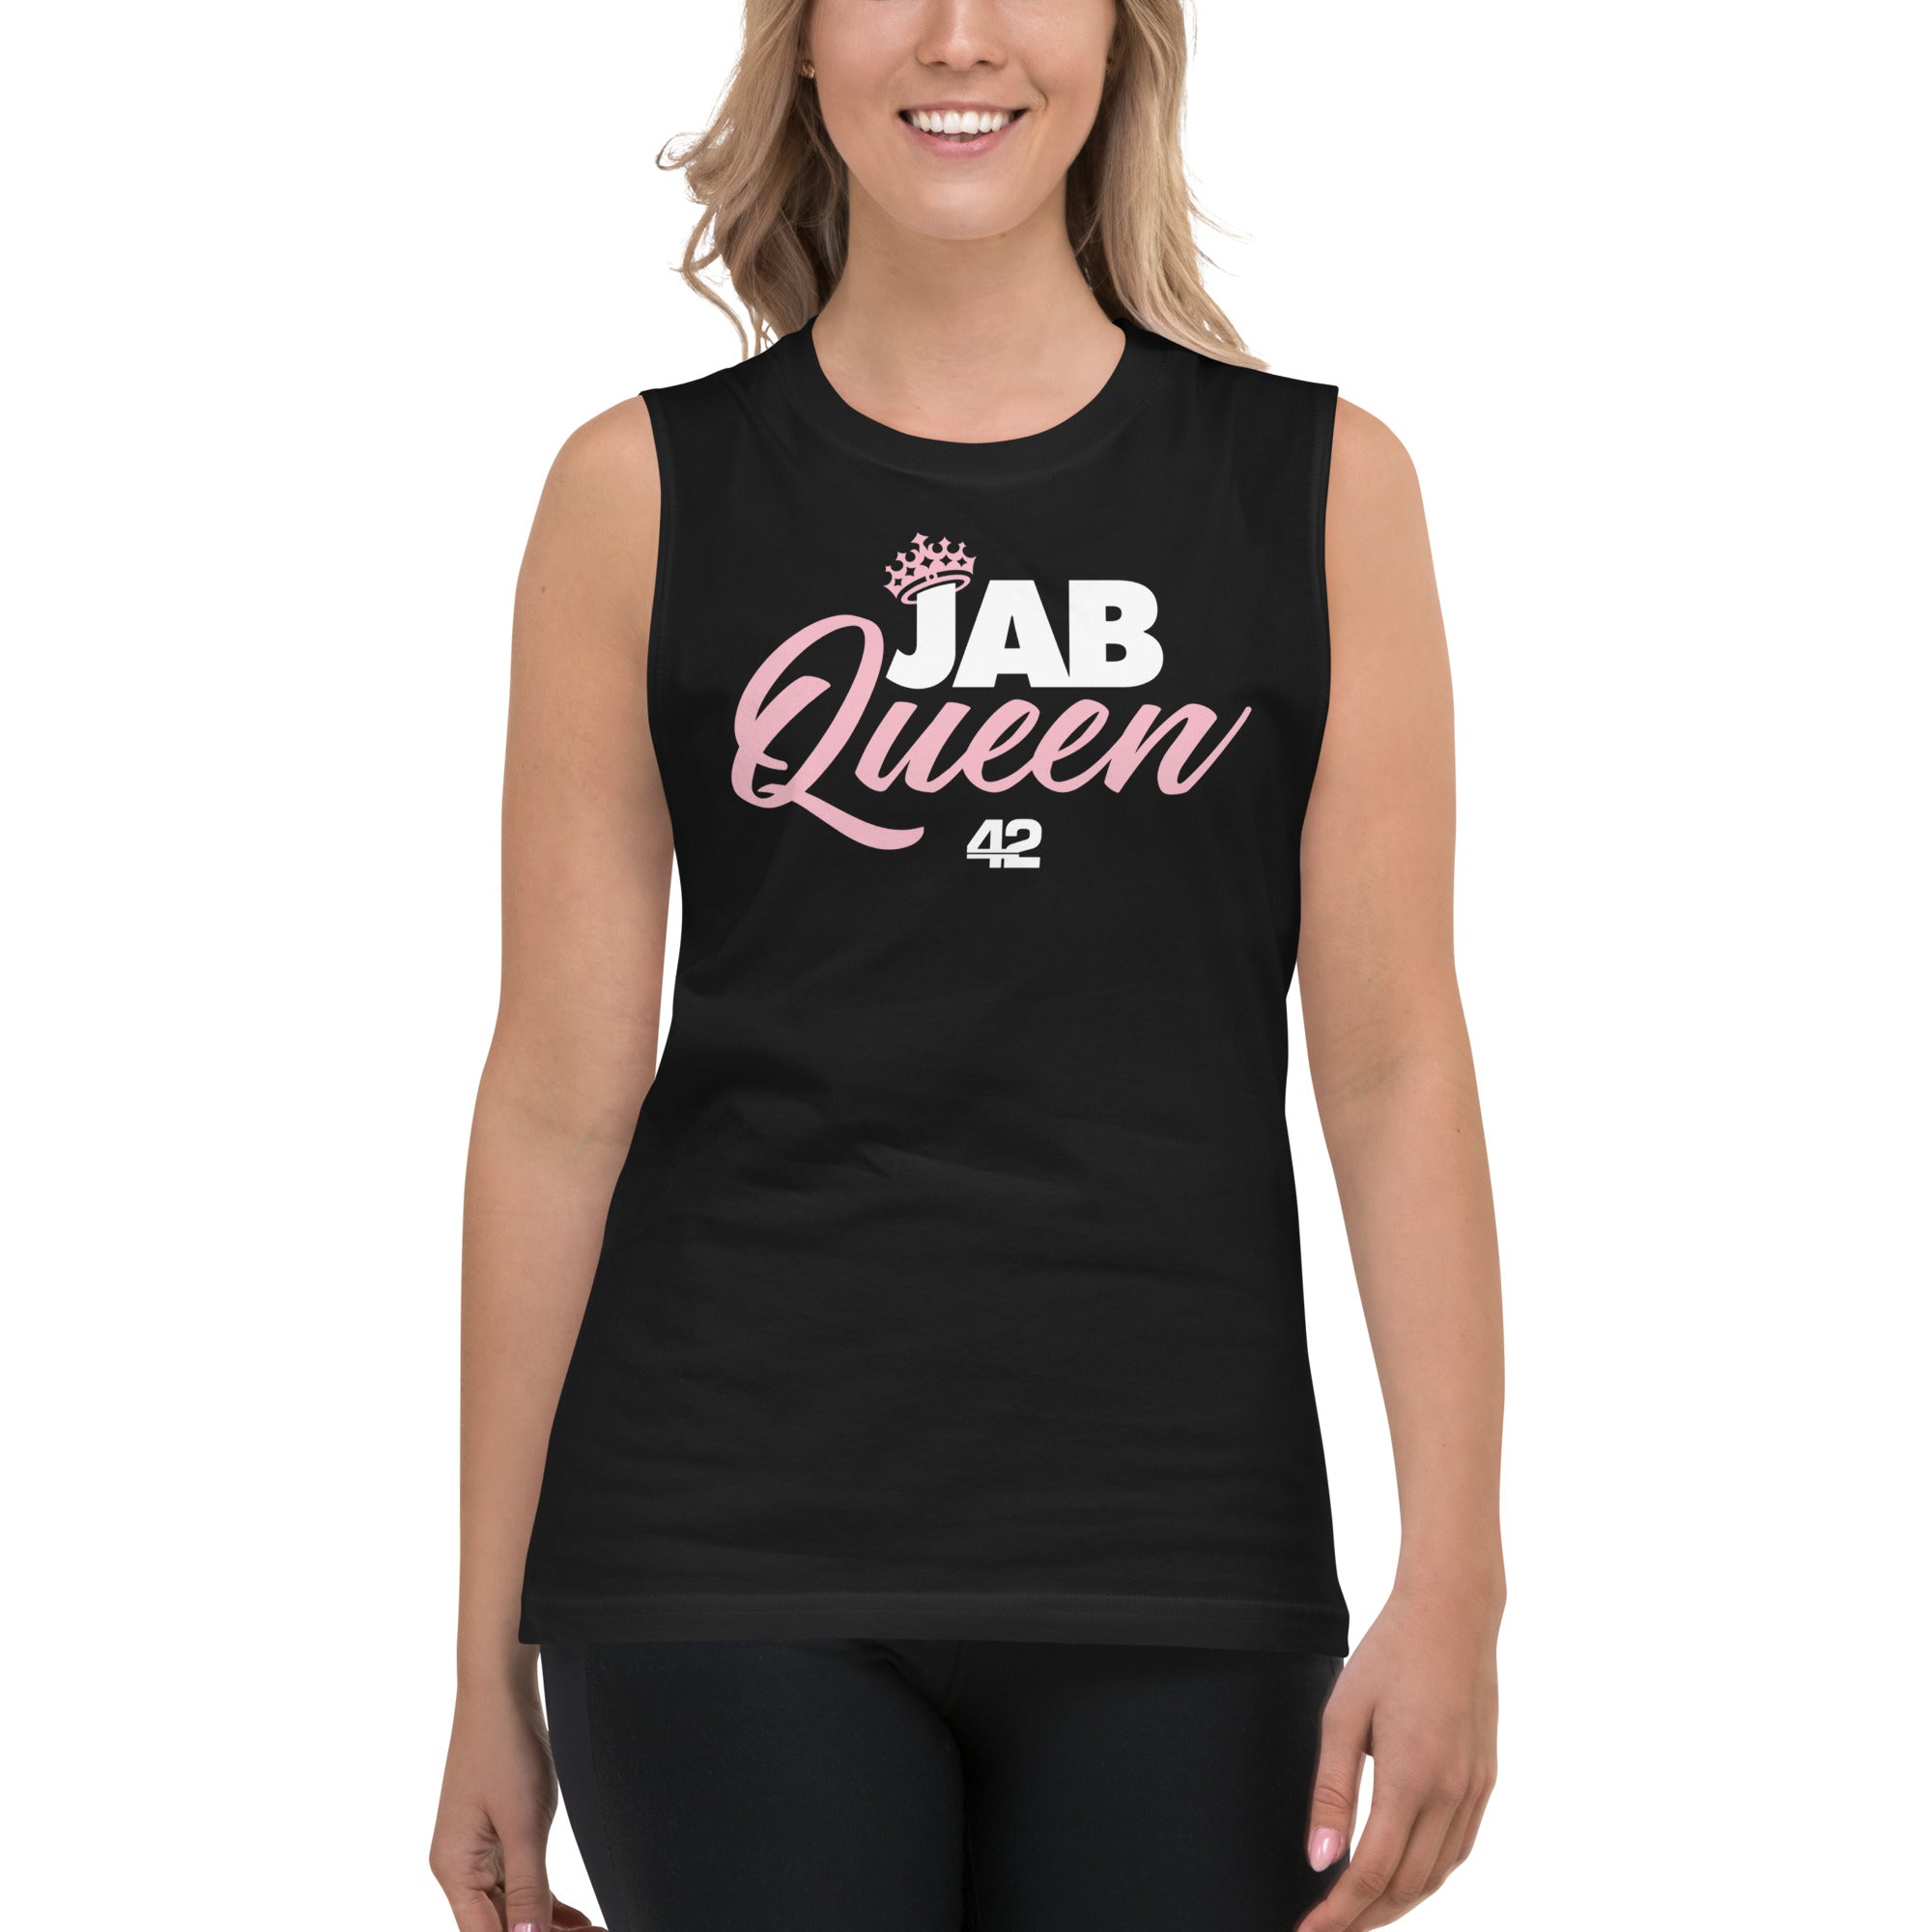 Jab Queen Muscle Shirt